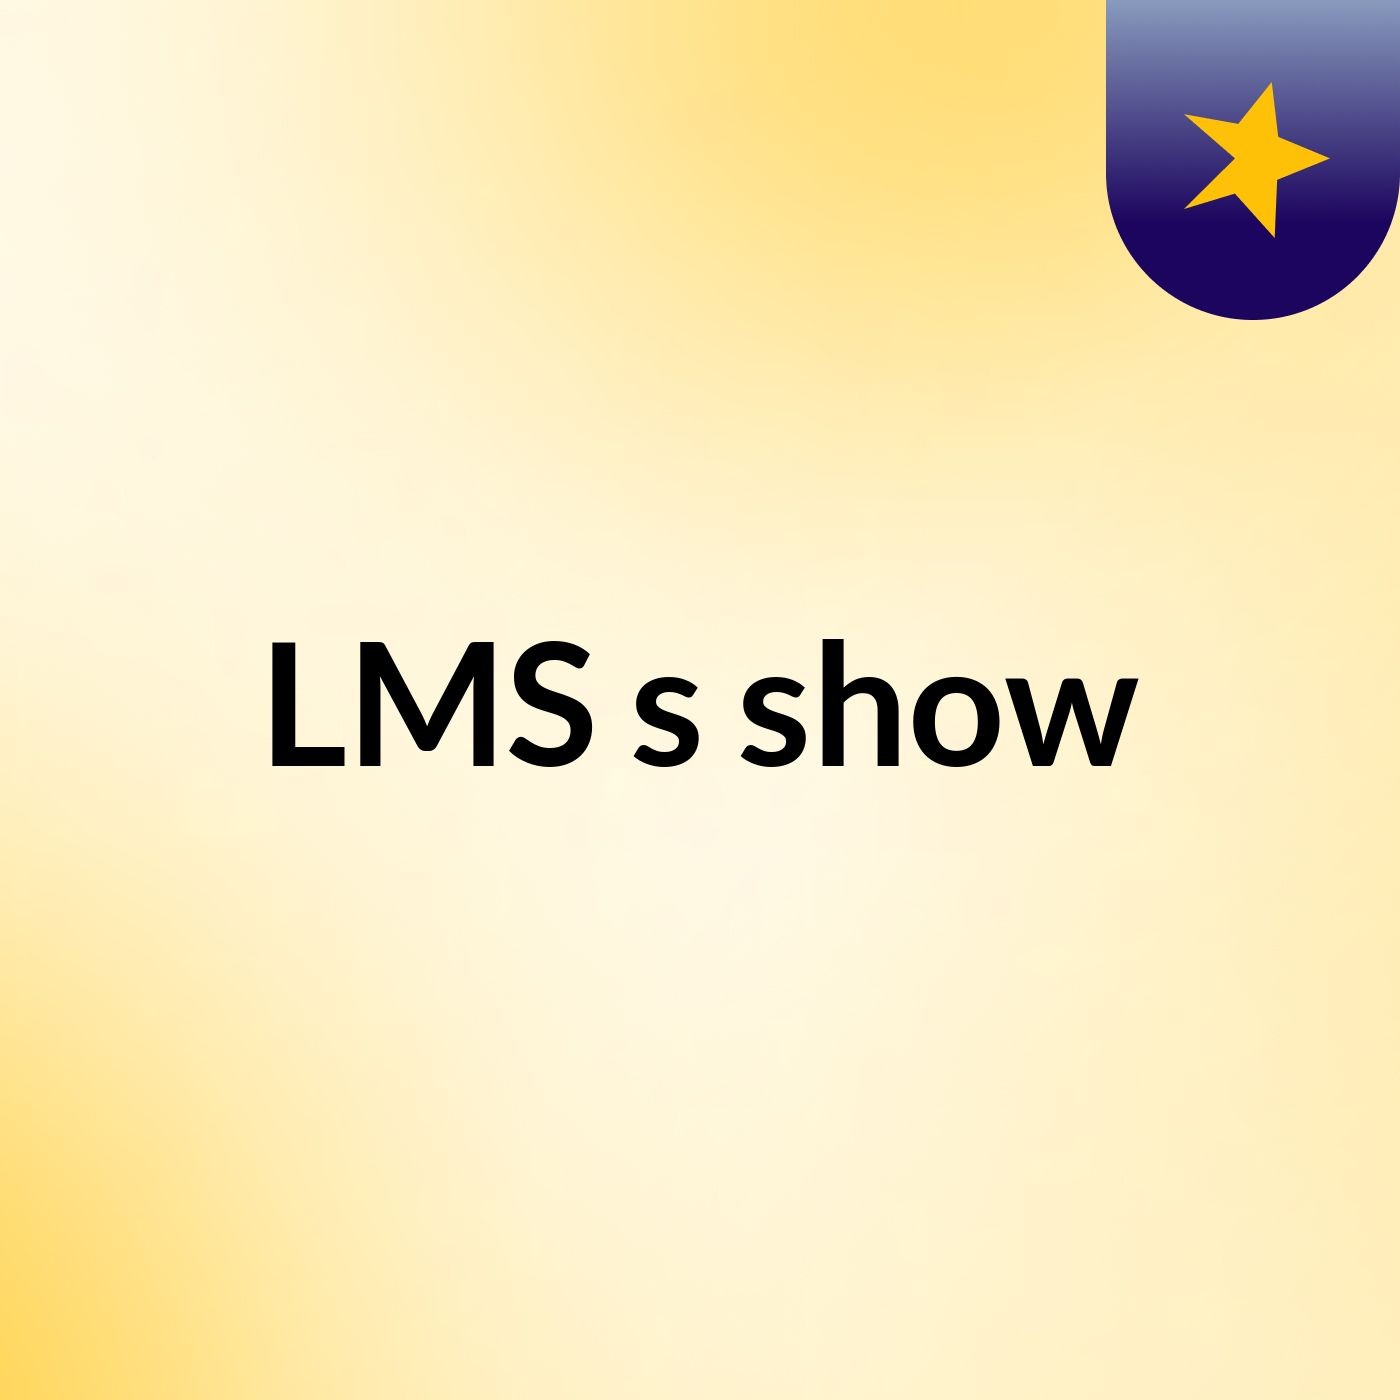 LMS's show